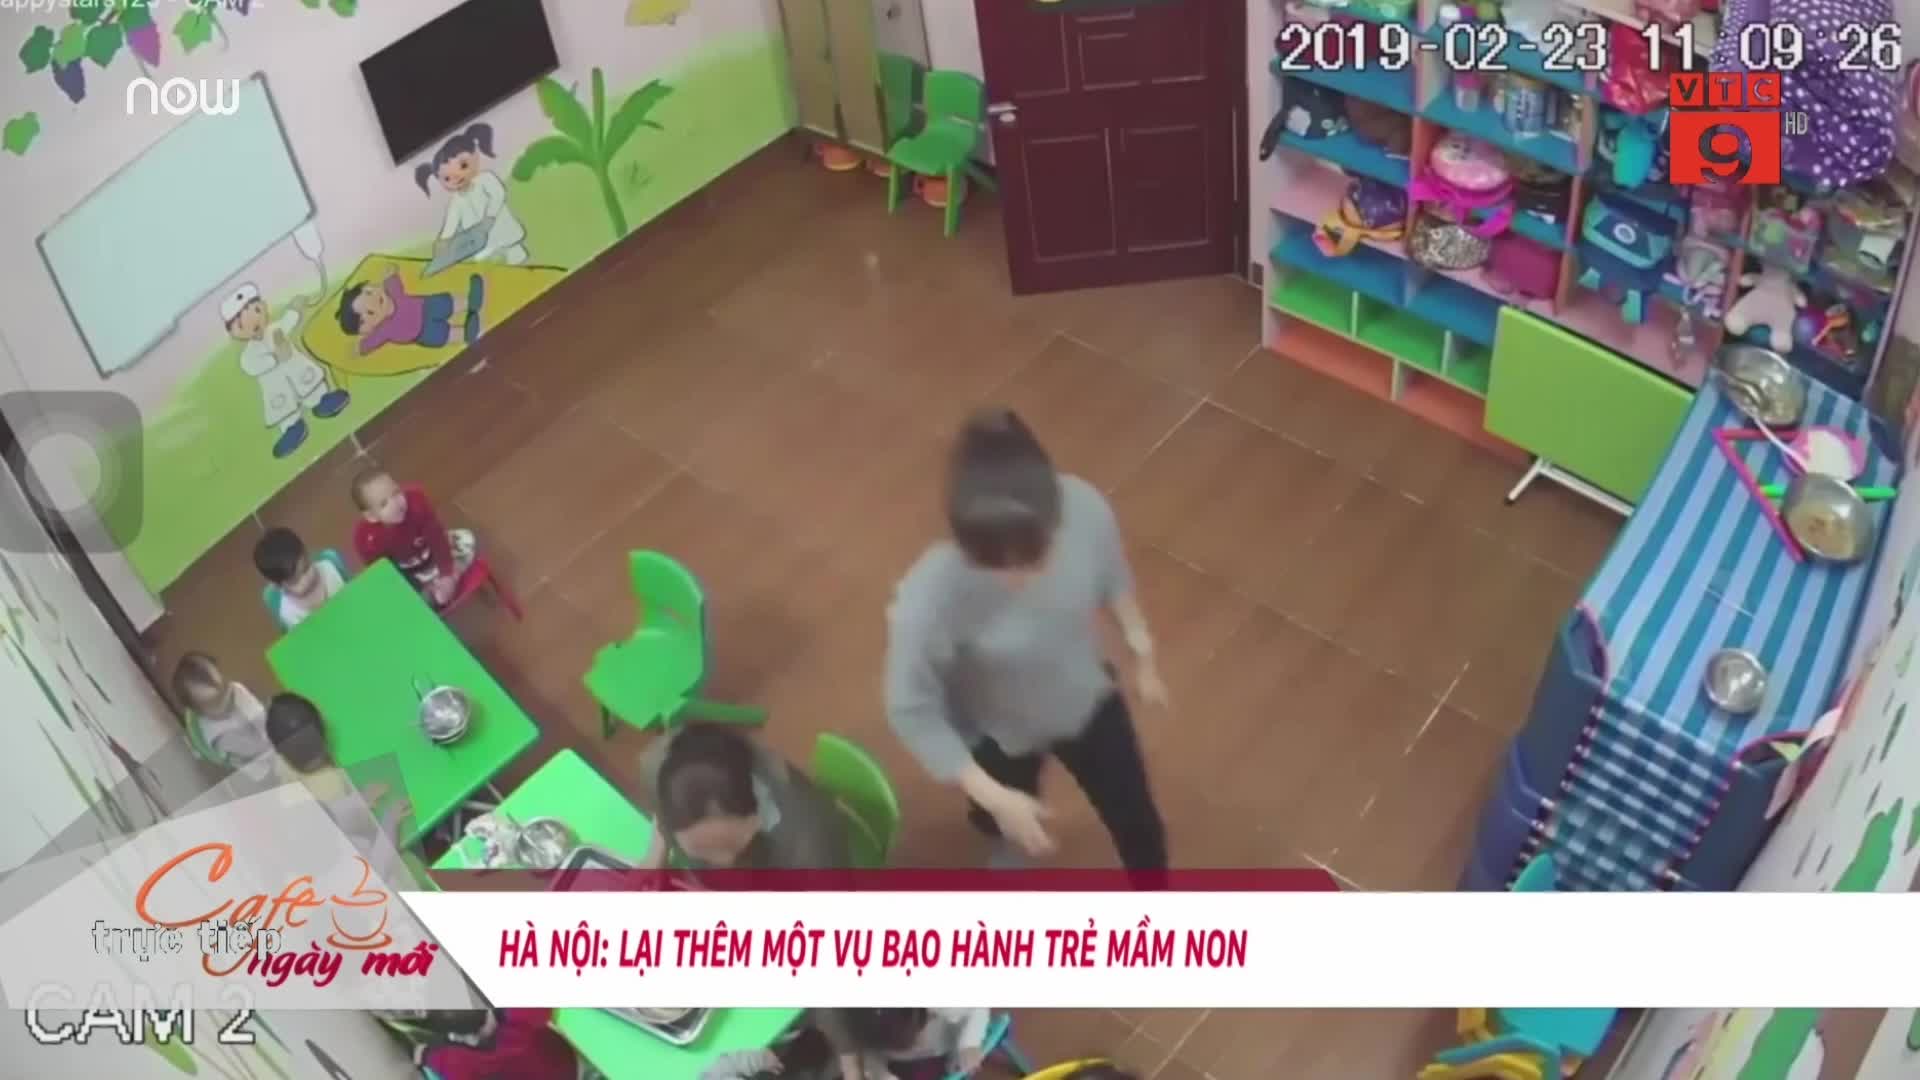 Lại thêm một vụ bạo hành trẻ em ở Hà Nội